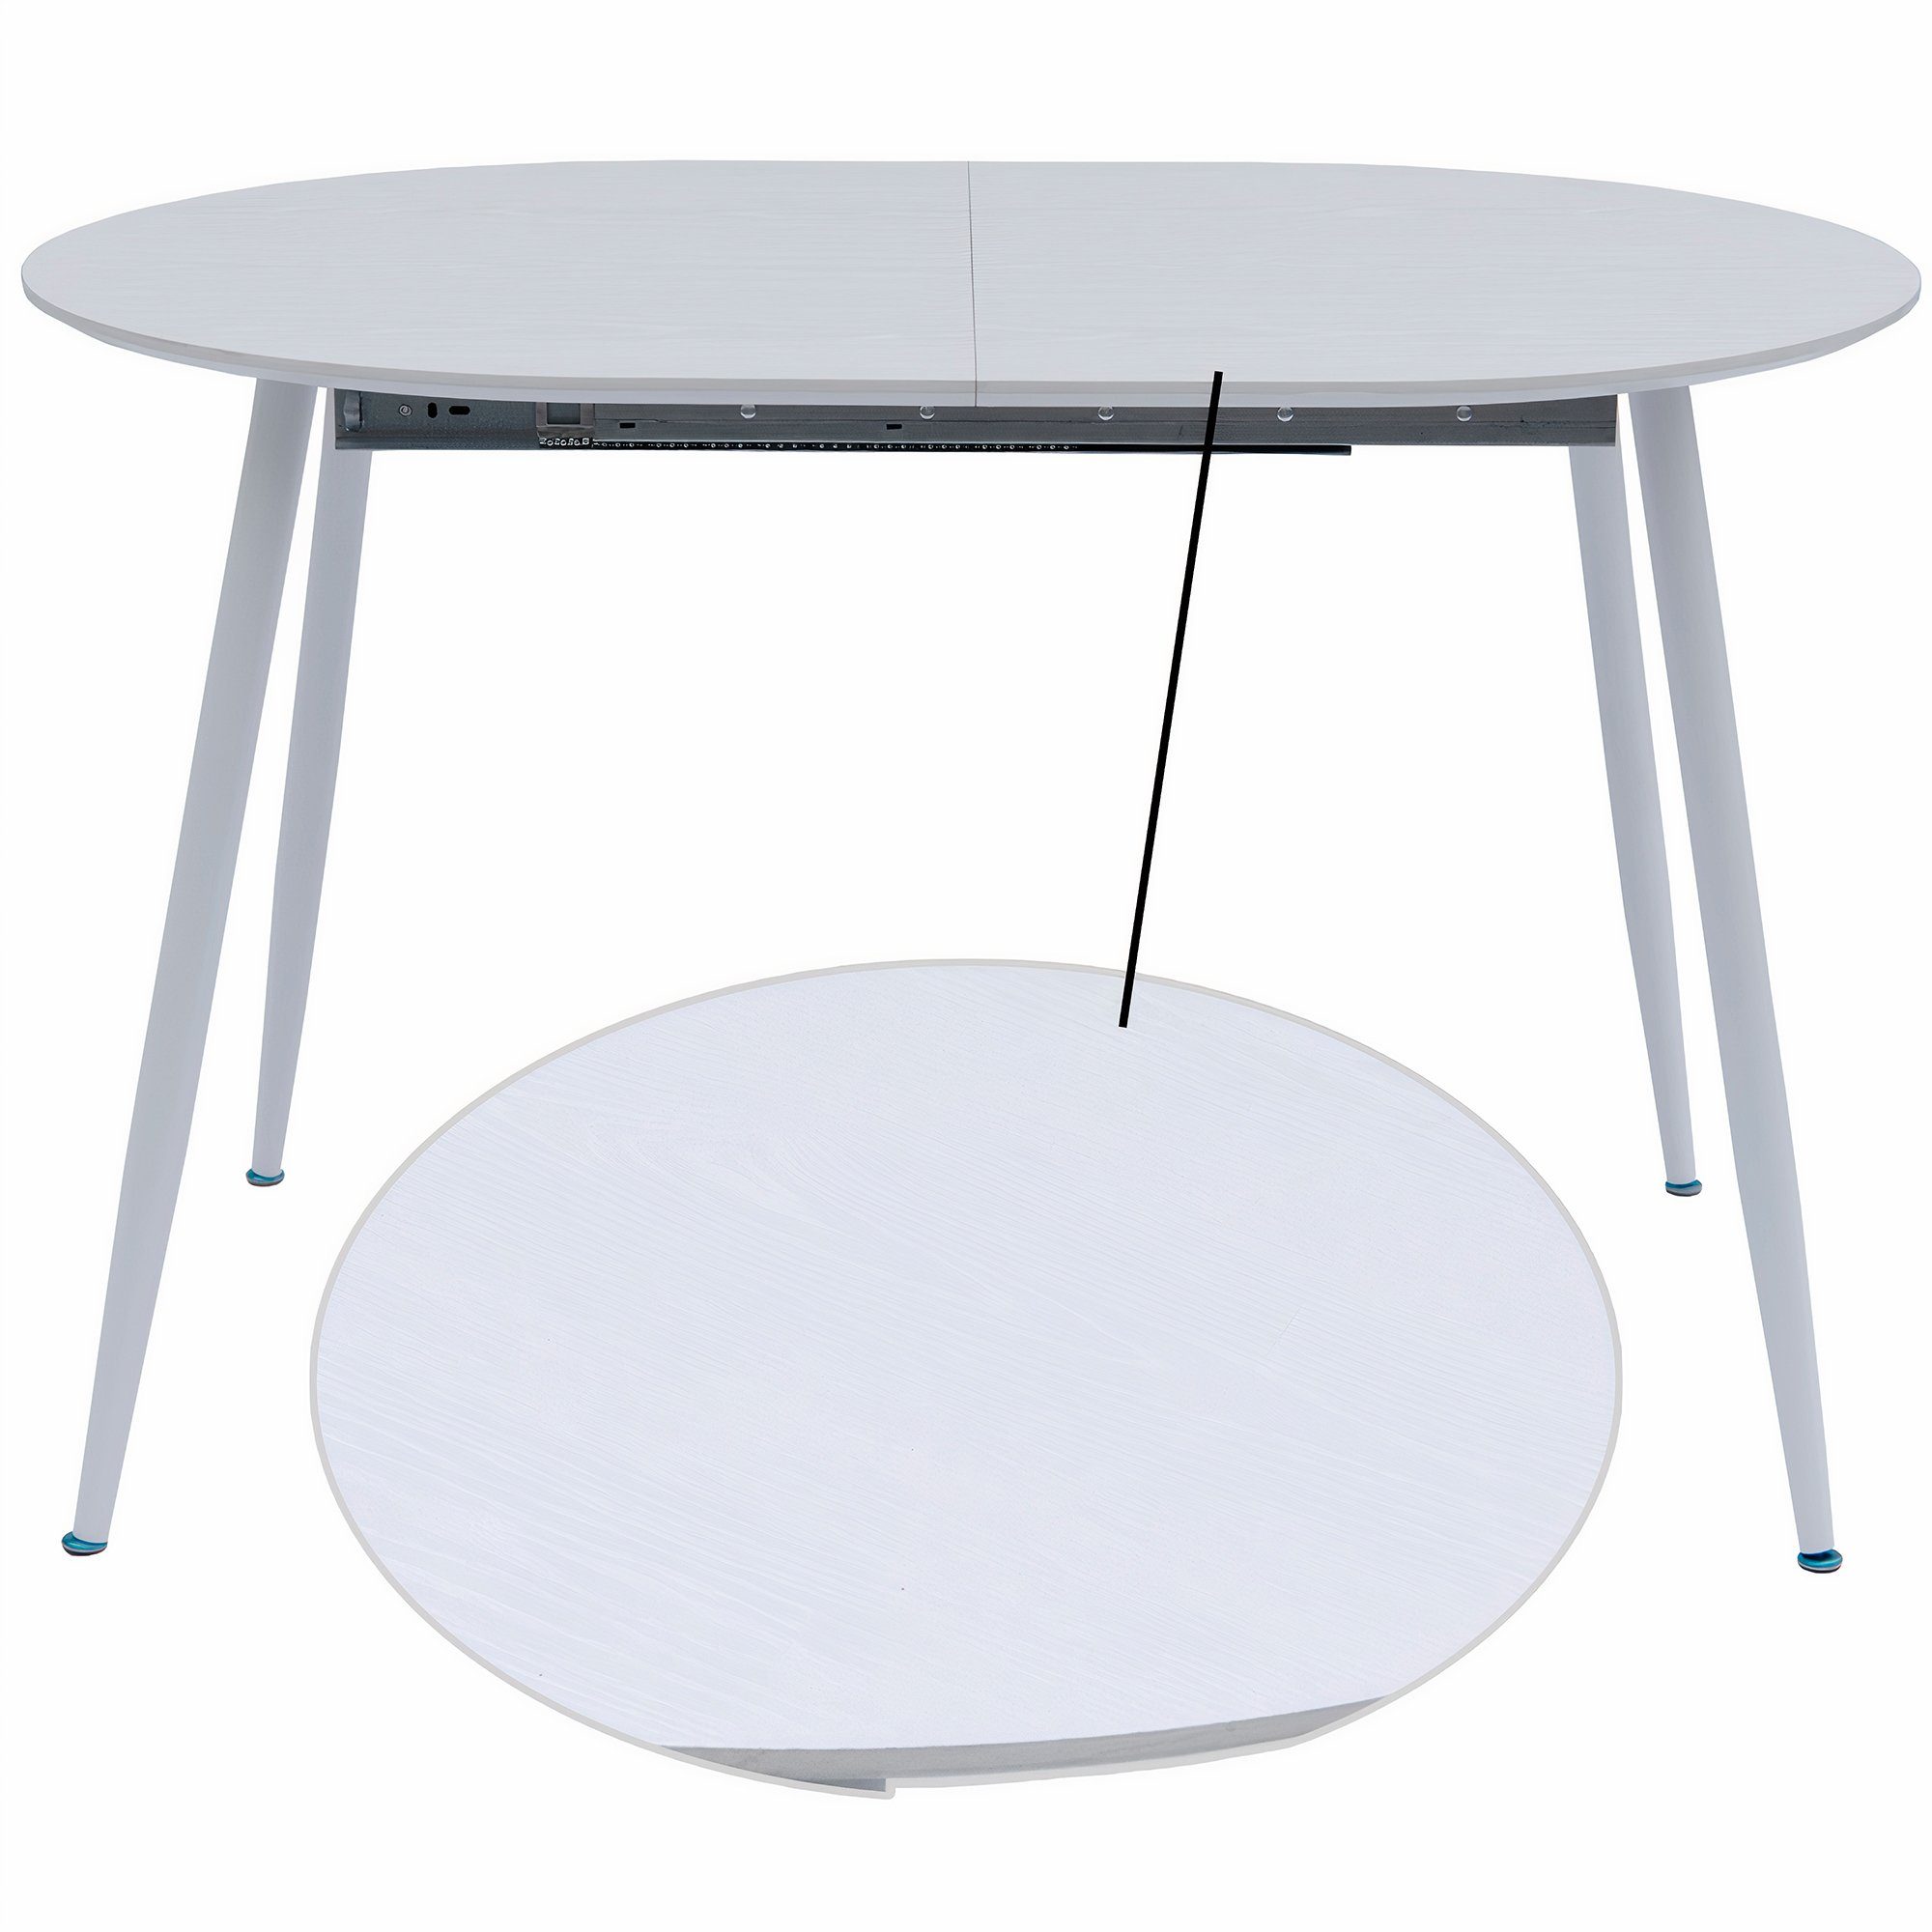 Holz Esstisch Tisch TRISENS 120-150-180x80cm 4-10Pers. Optik Ovaler Weiß Esstisch ausziehbar Rodrigo,